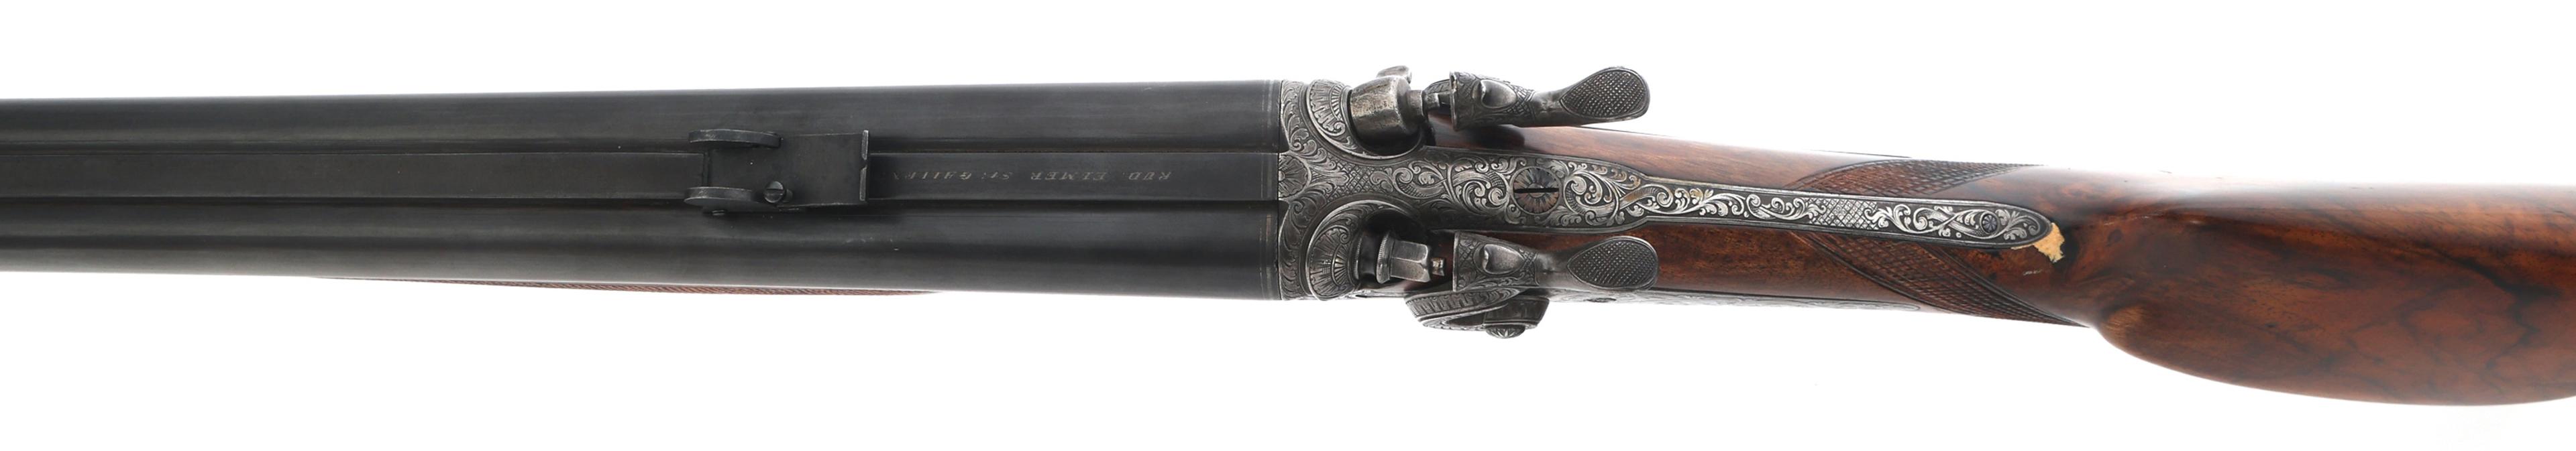 RUDOPLH ELMER DRILLING 11mm 16 GAUGE COMBO GUN